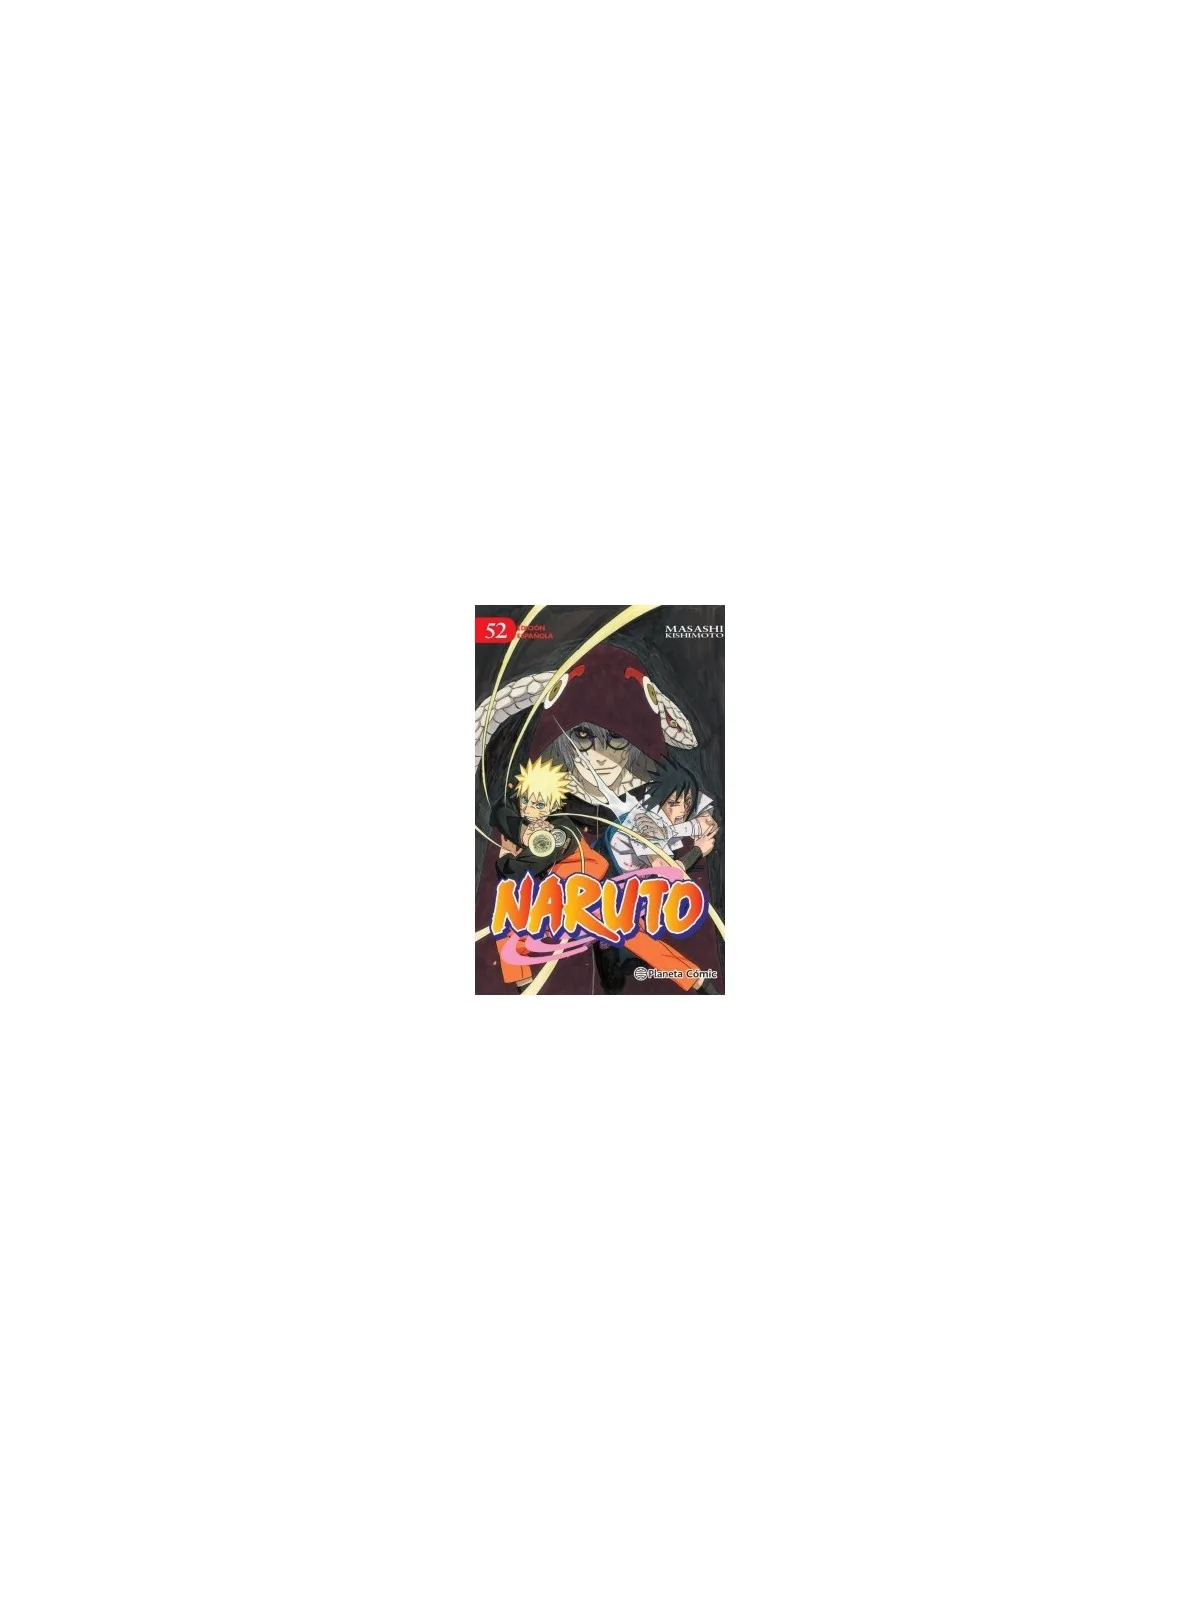 Comprar Naruto 52 barato al mejor precio 7,12 € de Planeta Comic